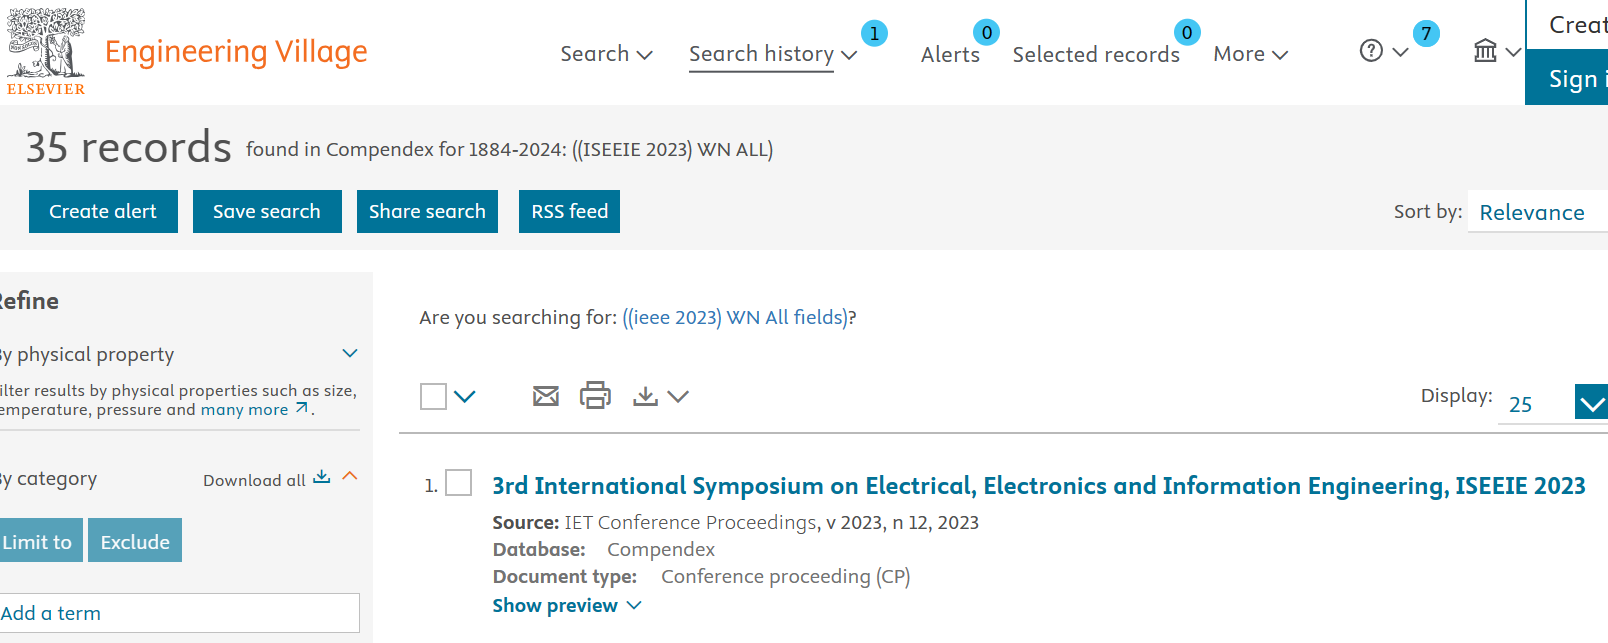 2024年第四届电气、电子与信息工程国际会议（ISEEIE 2024）